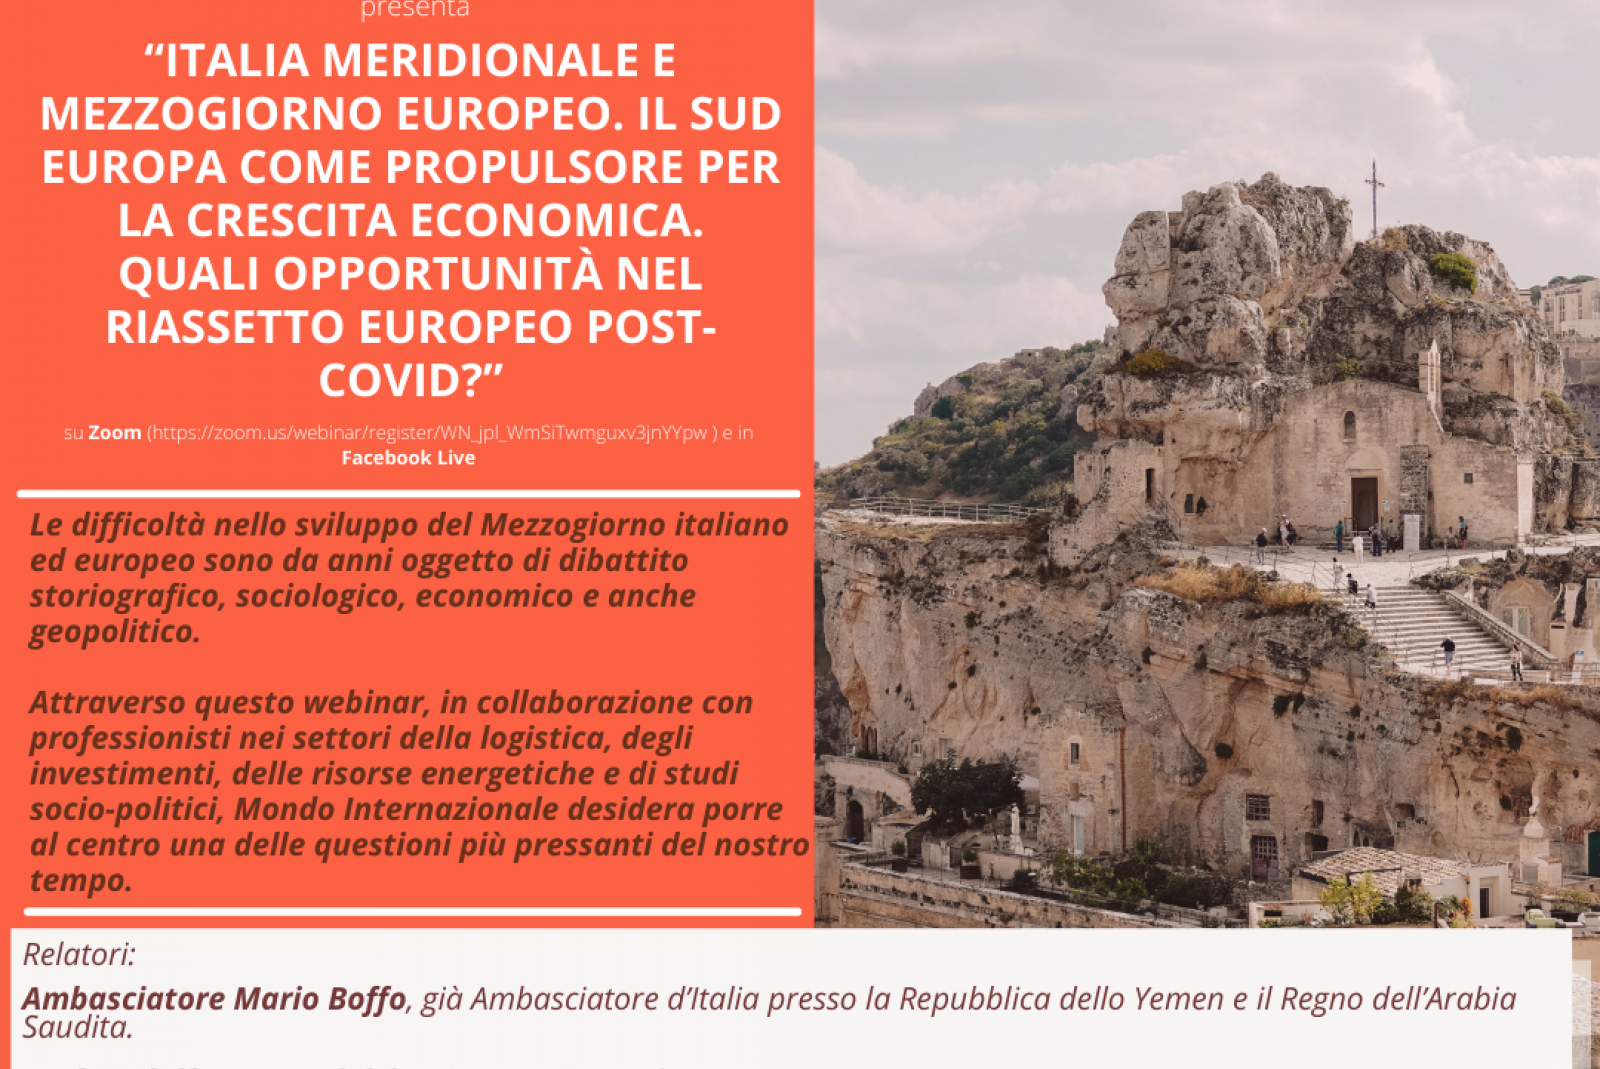 Italia meridionale e Mezzogiorno europeo. Il Sud Europa come propulsore per la crescita economica - 23 aprile 2021